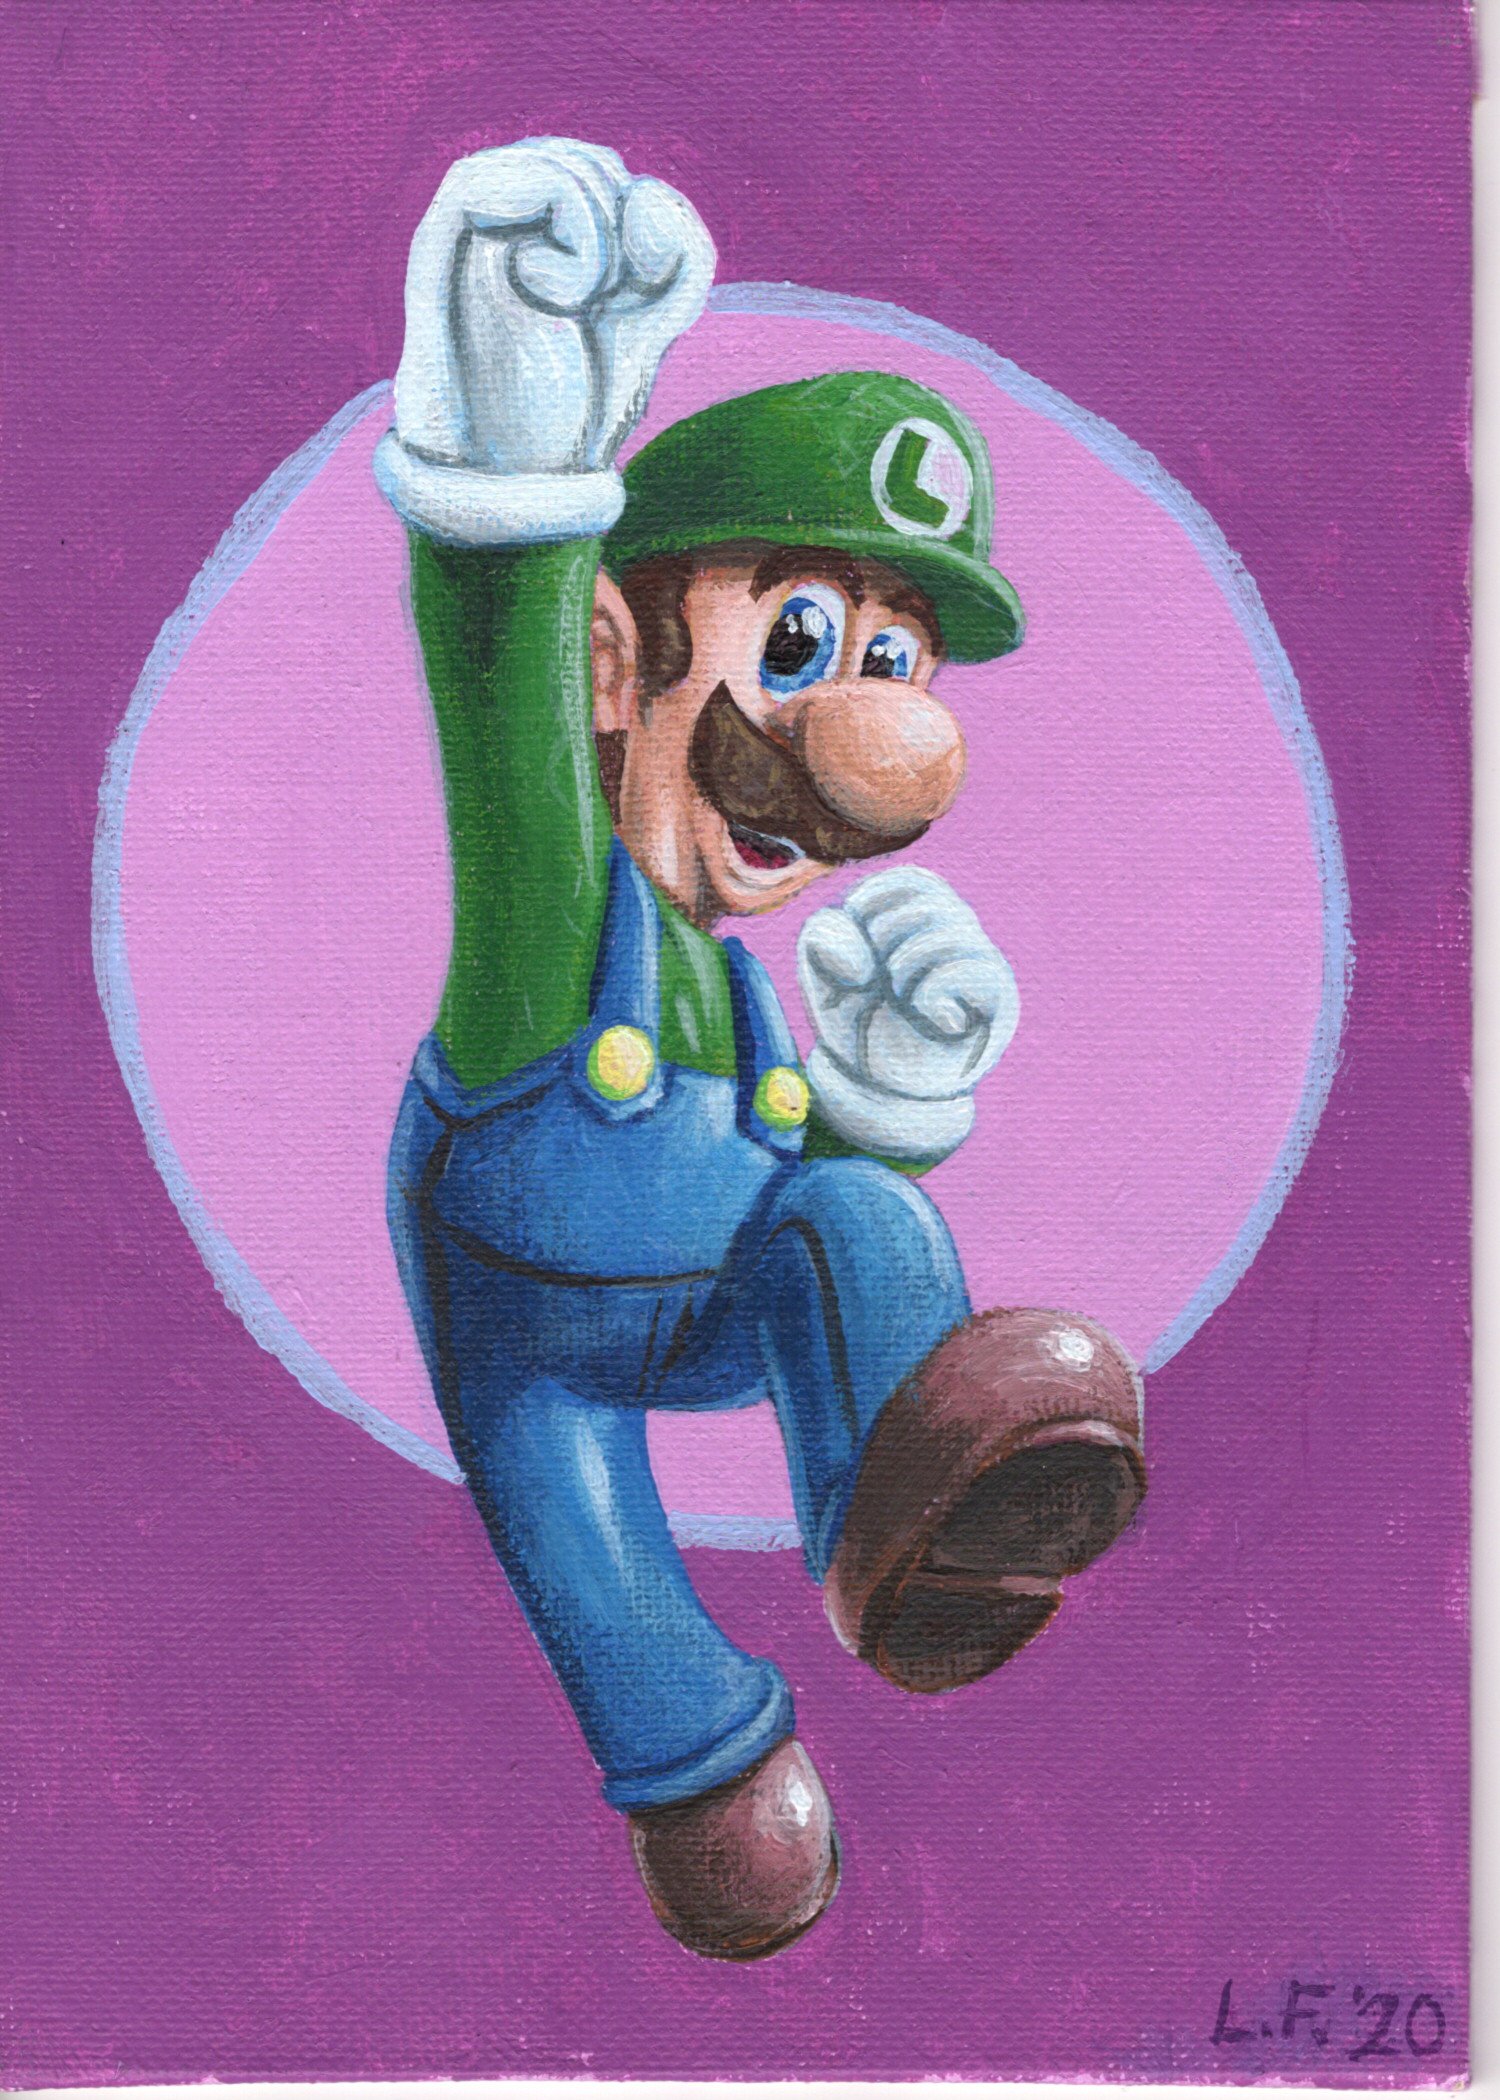 Artwork: Luigi